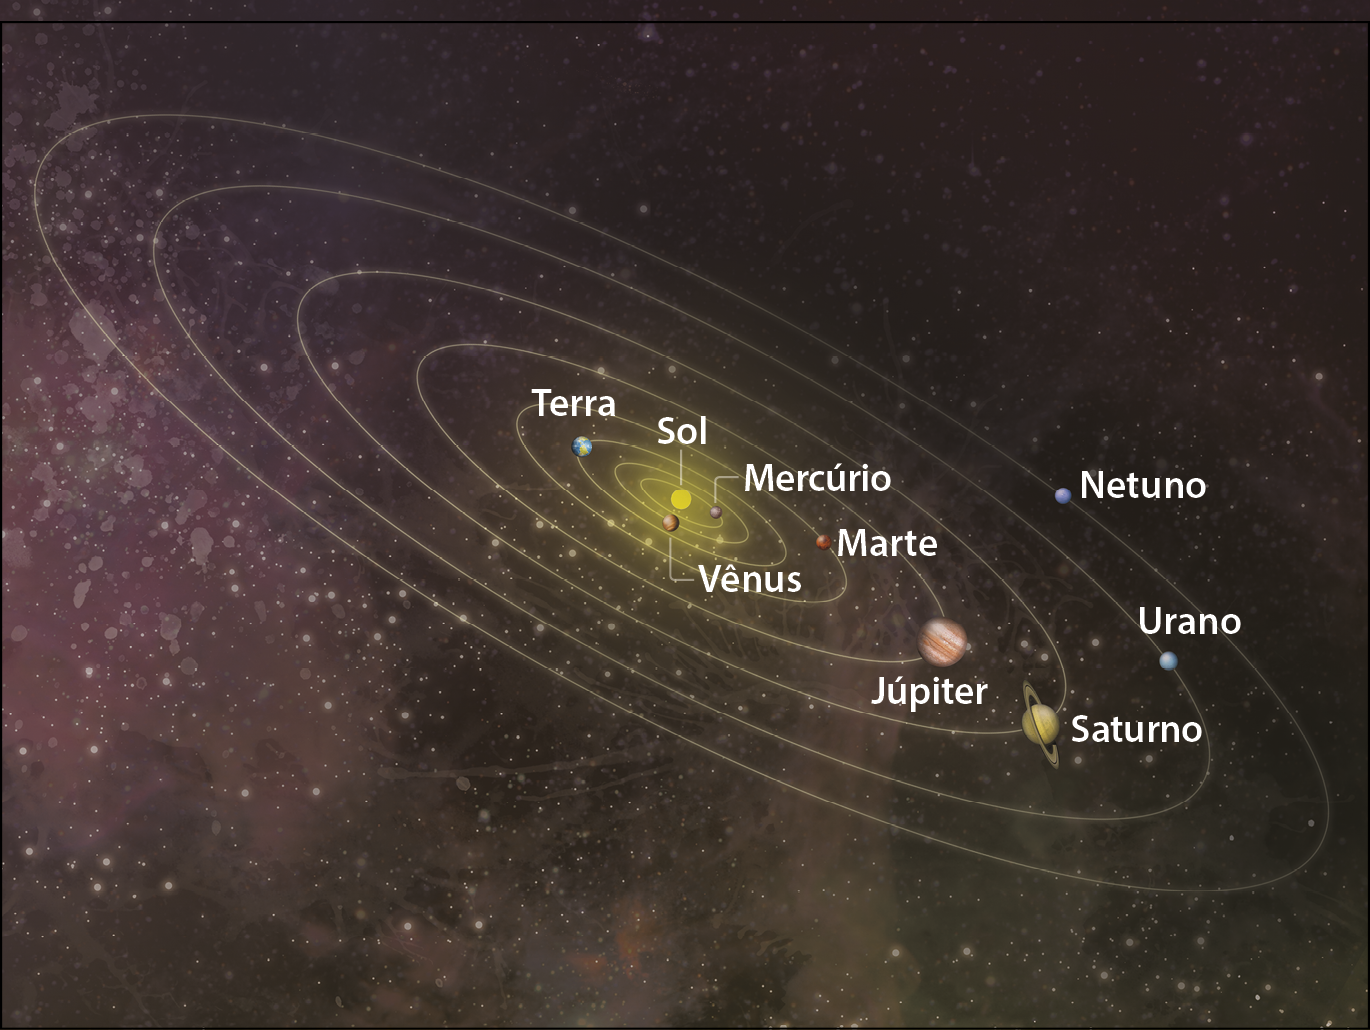 Ilustração. O Sistema Solar. Representação do Sistema Solar com enfoque nas órbitas dos planetas, representadas por um traçado branco e elíptico em volta do Sol. Cada planeta está sinalizado com seu nome: Mercúrio, Vênus, Terra, Marte, Júpiter, Saturno, Urano e Netuno. O fundo da ilustração é escuro e com pequenos pontos de luz.